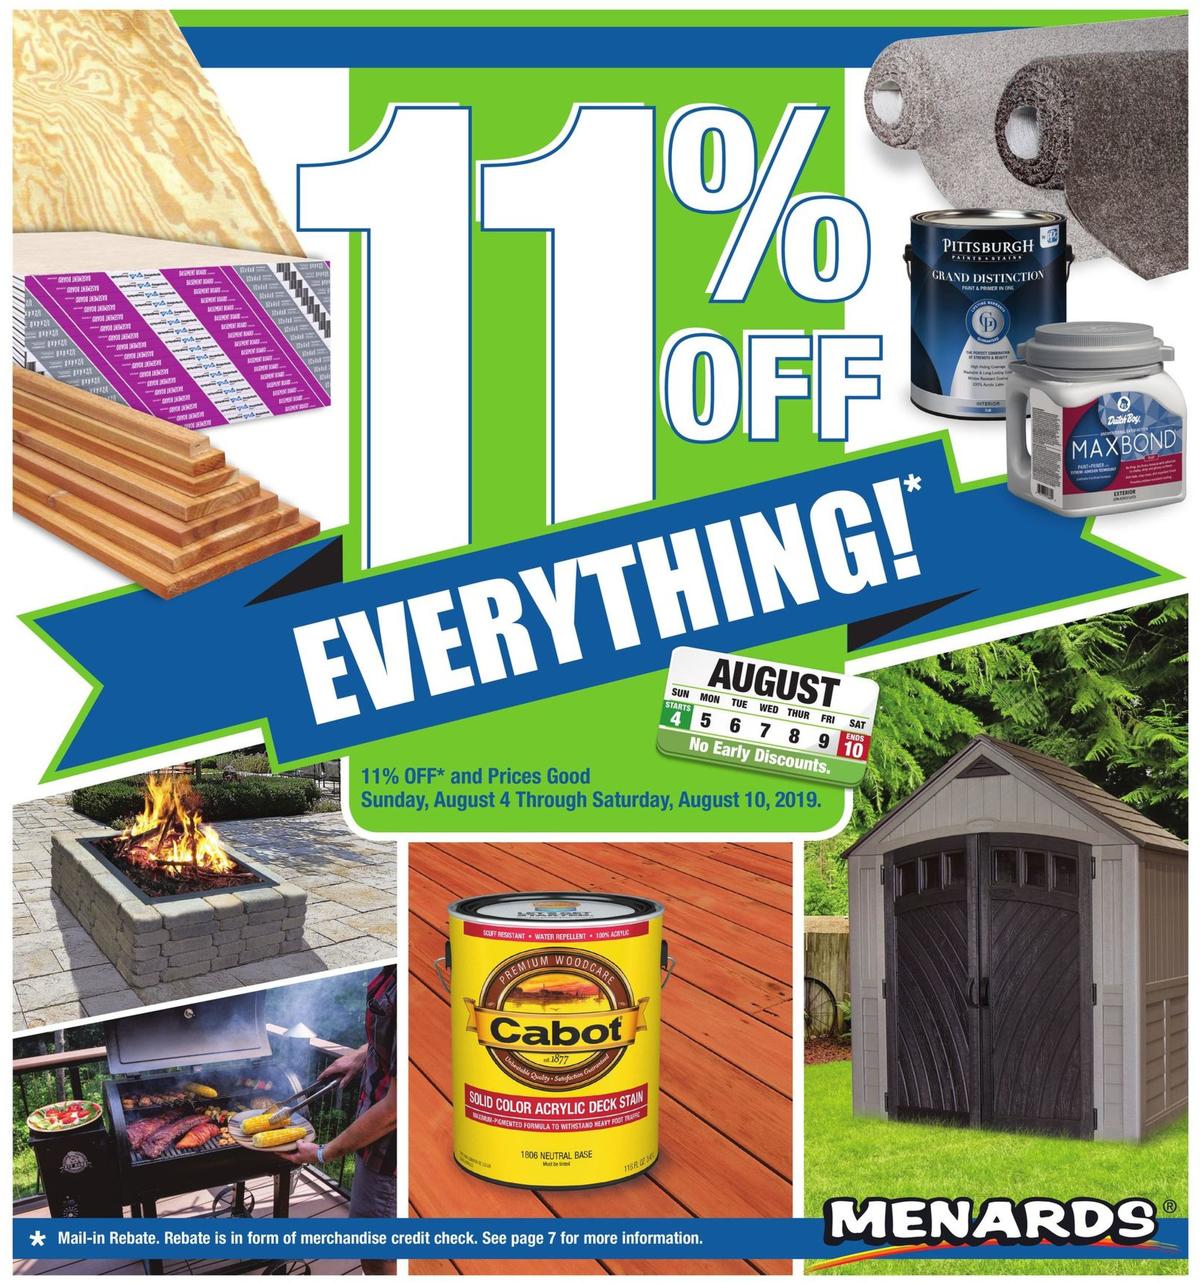 Menards 11% Rebate Sale Weekly Ad from August 4